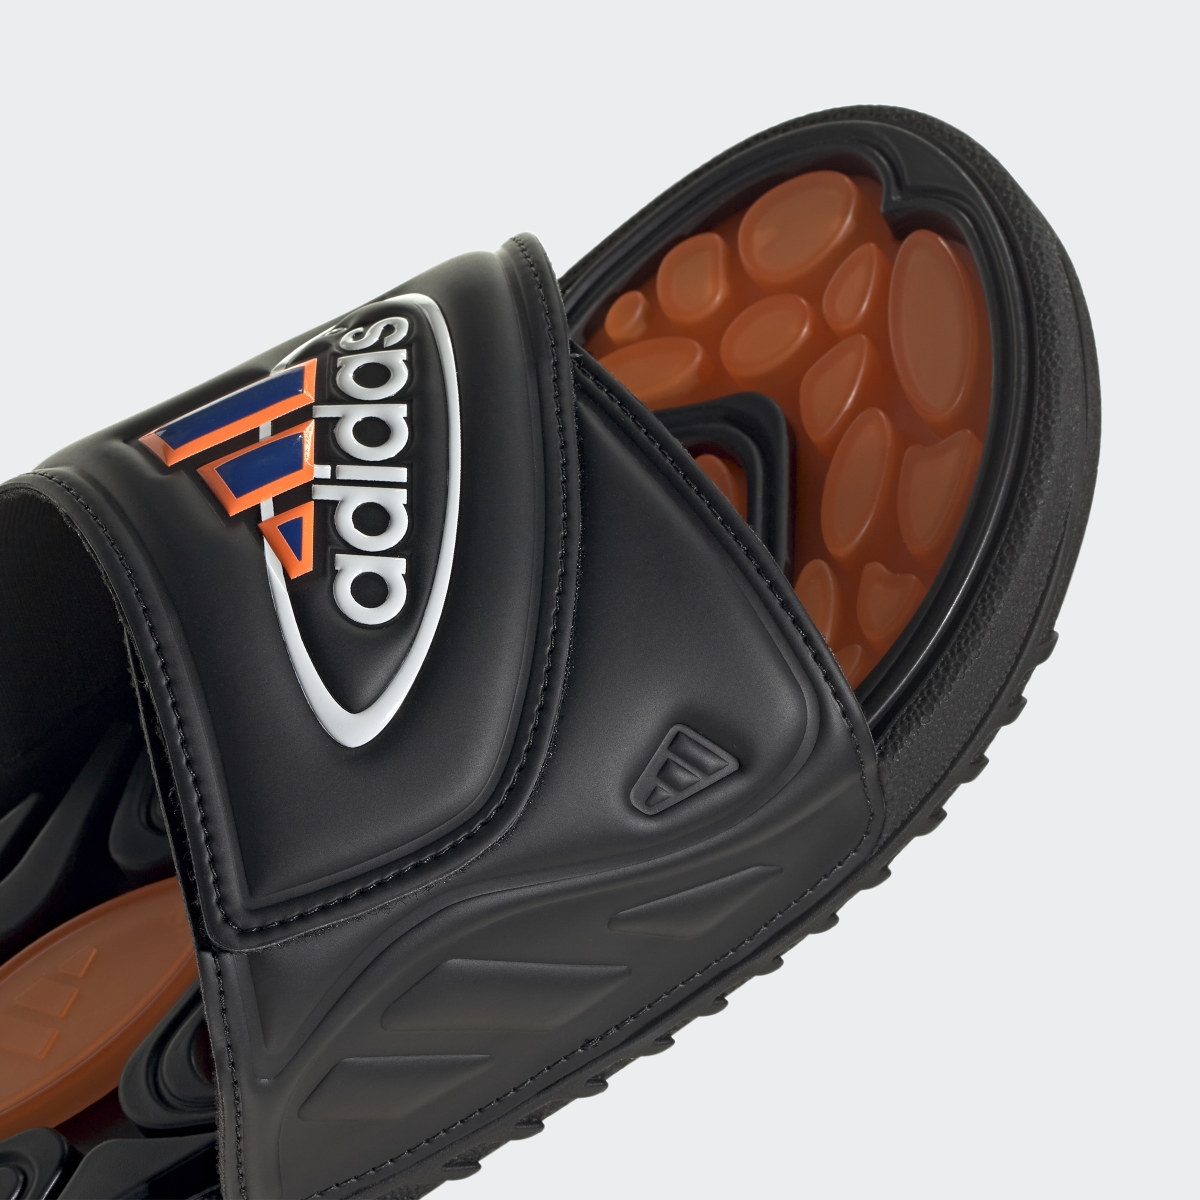 Adidas Reptossage Slides. 9